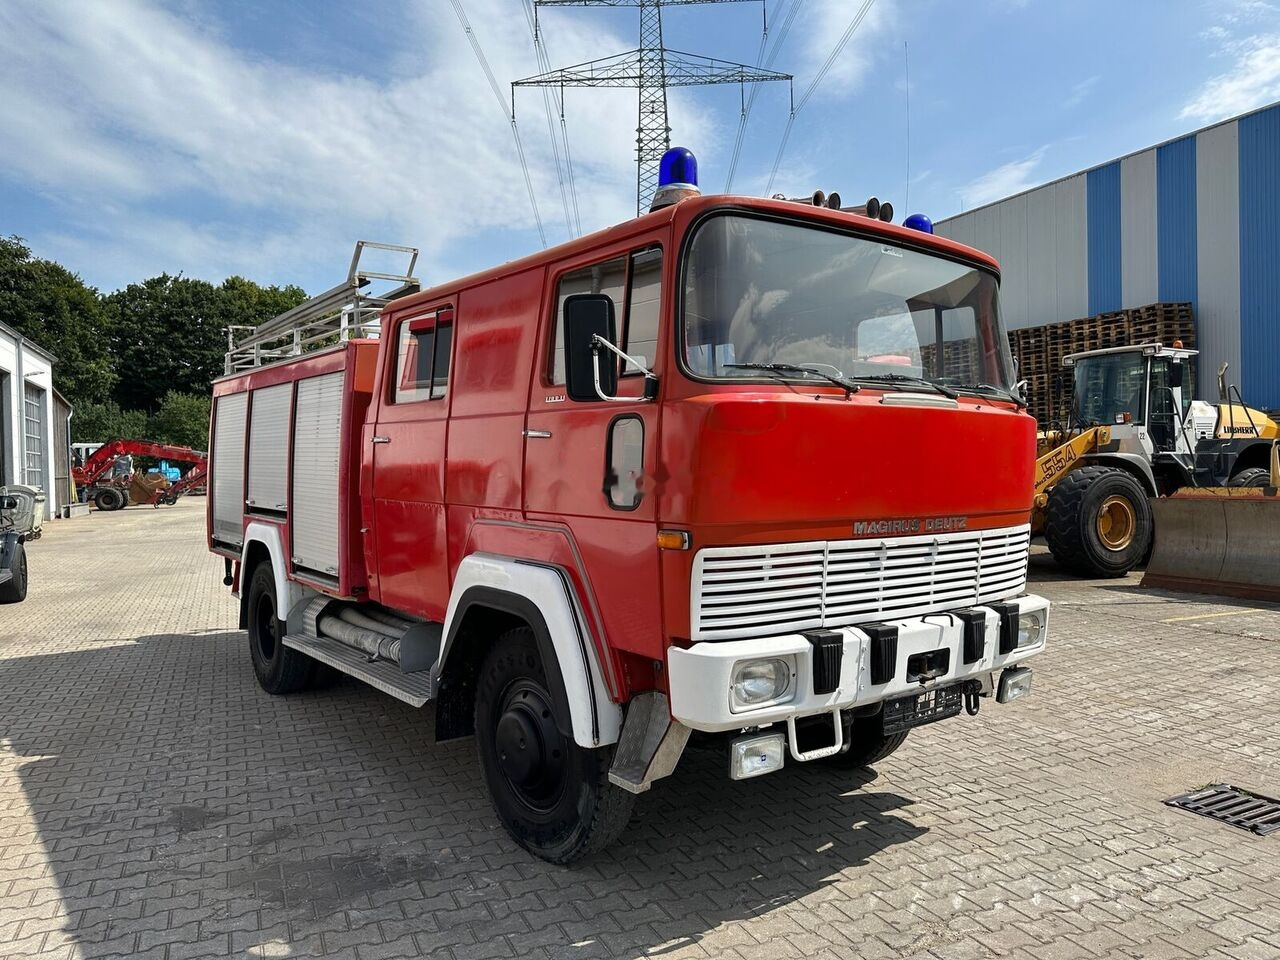 Fire truck Magirus-Deutz 170 D11 Feuerwehrauto H-Zulassung 4x4: picture 4